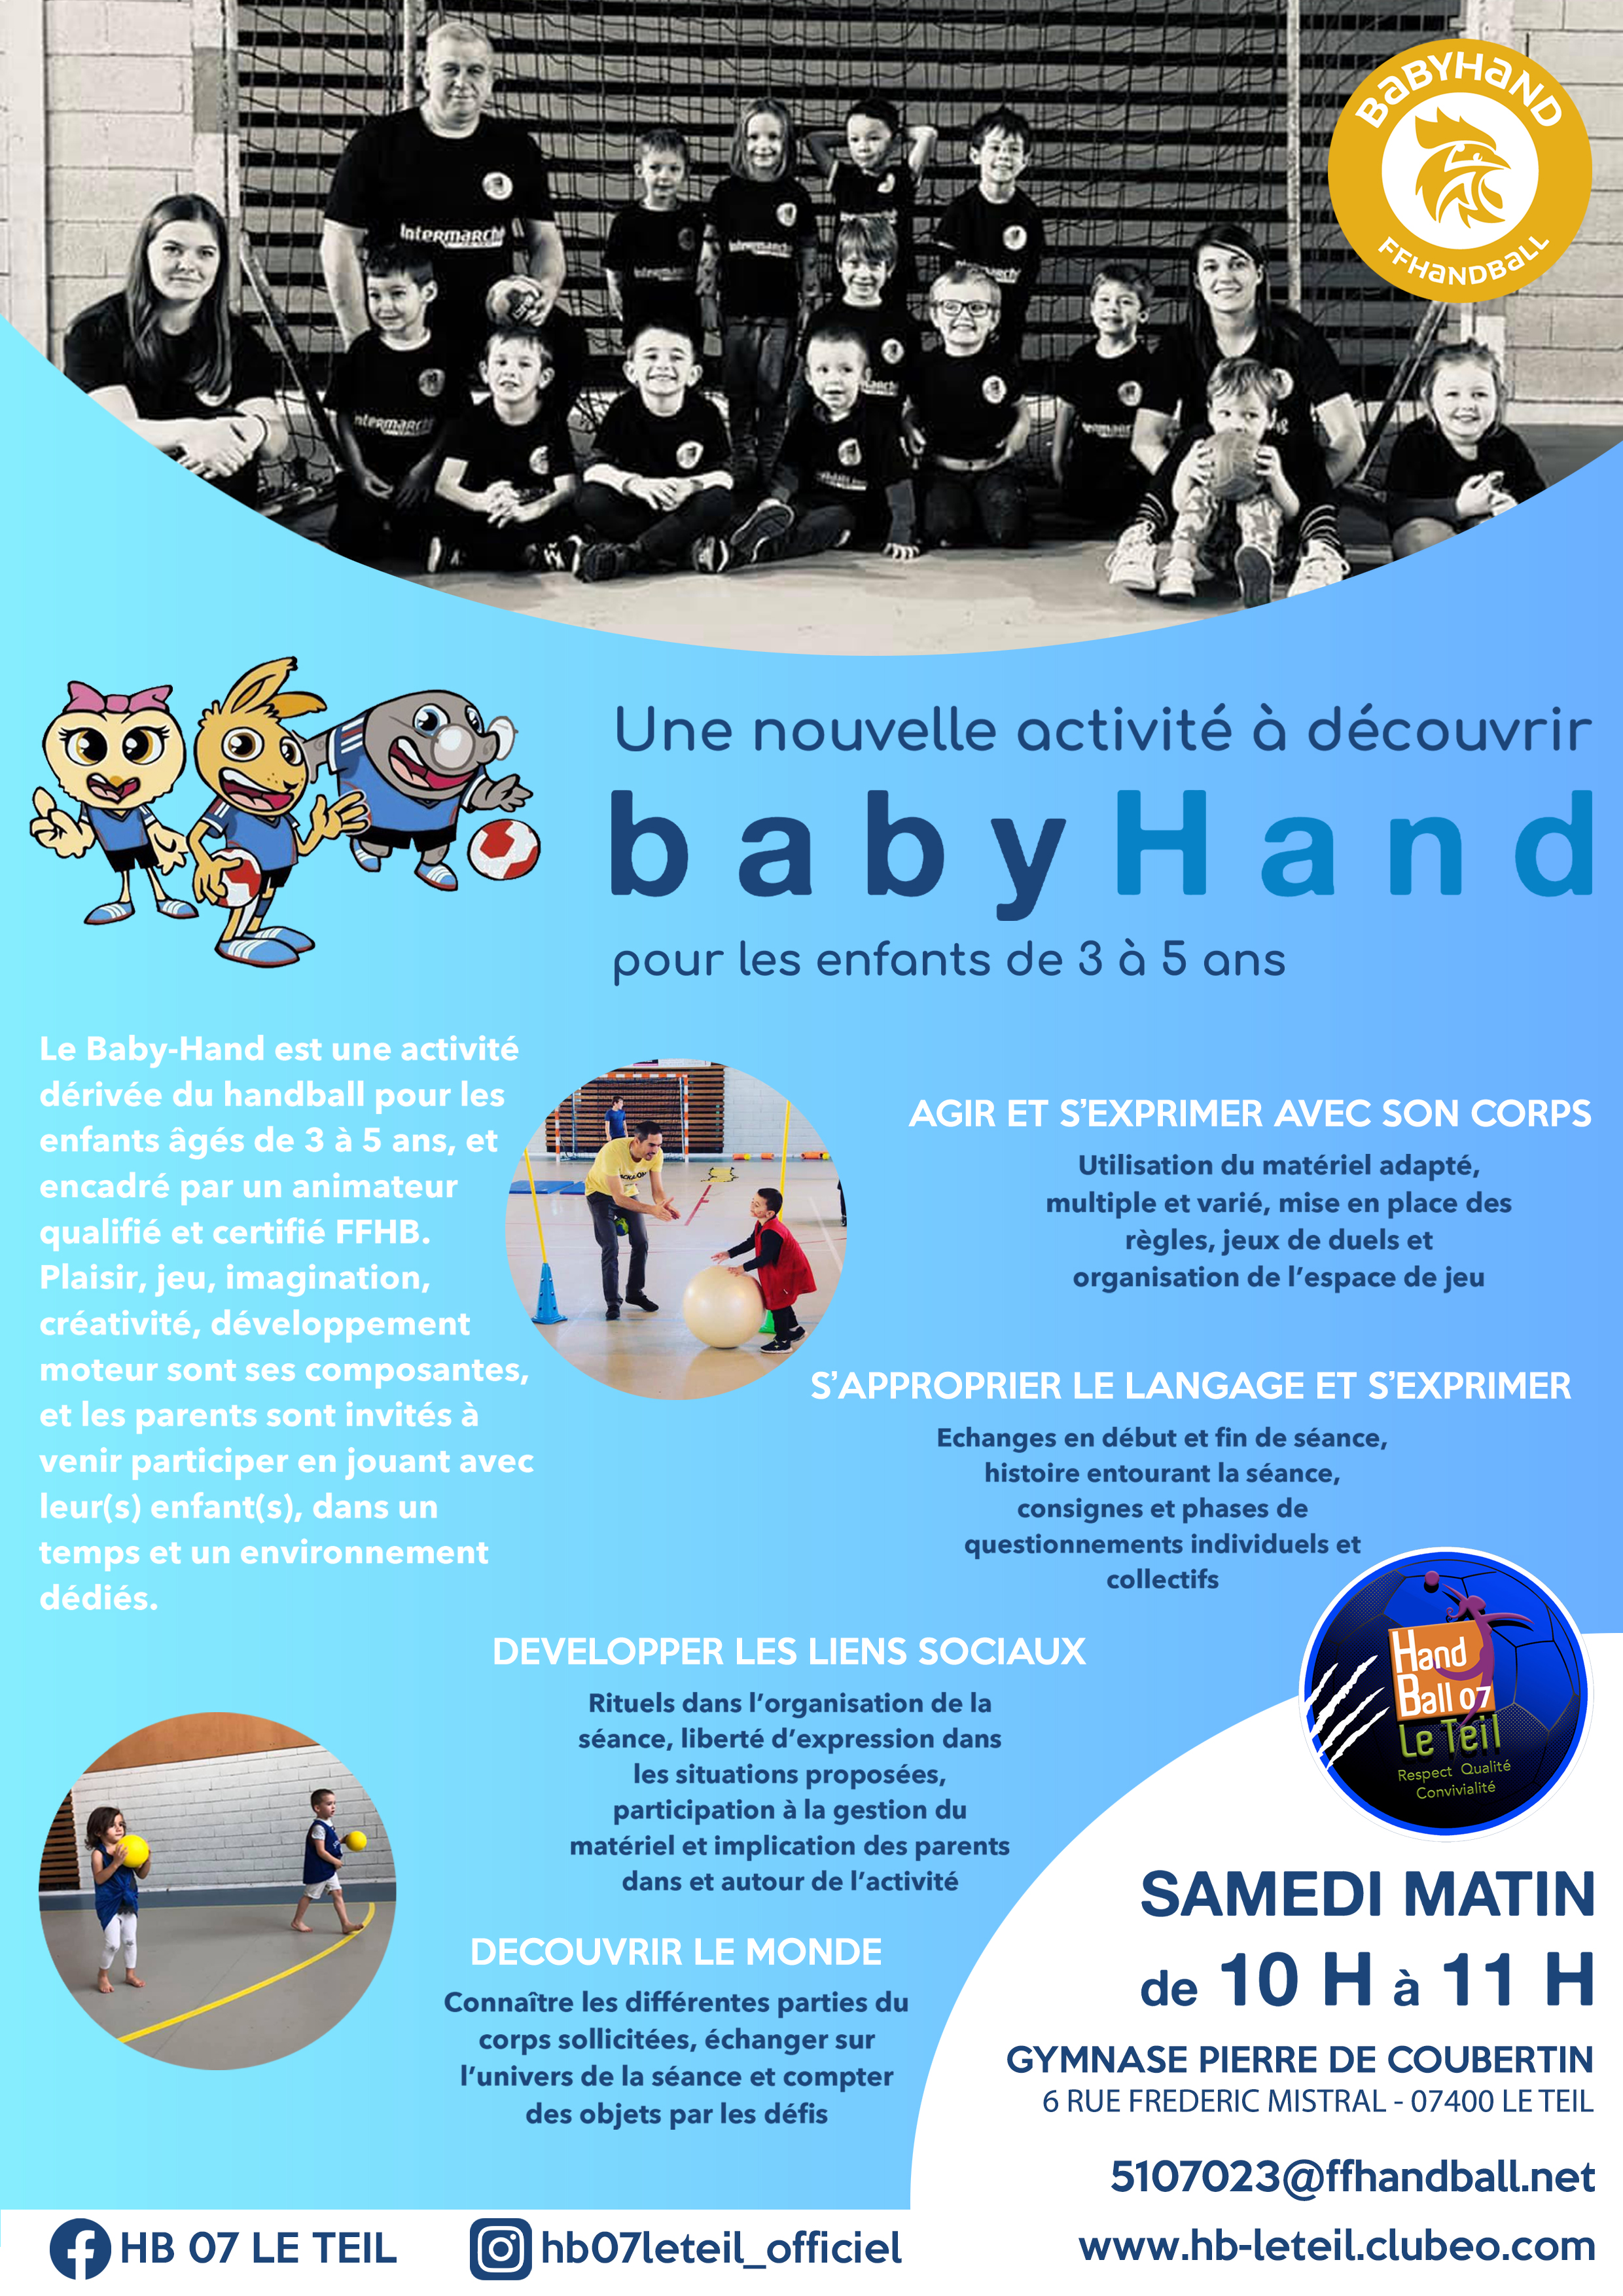 Le Teil. Un stage handball pour les enfants pendant les vacances